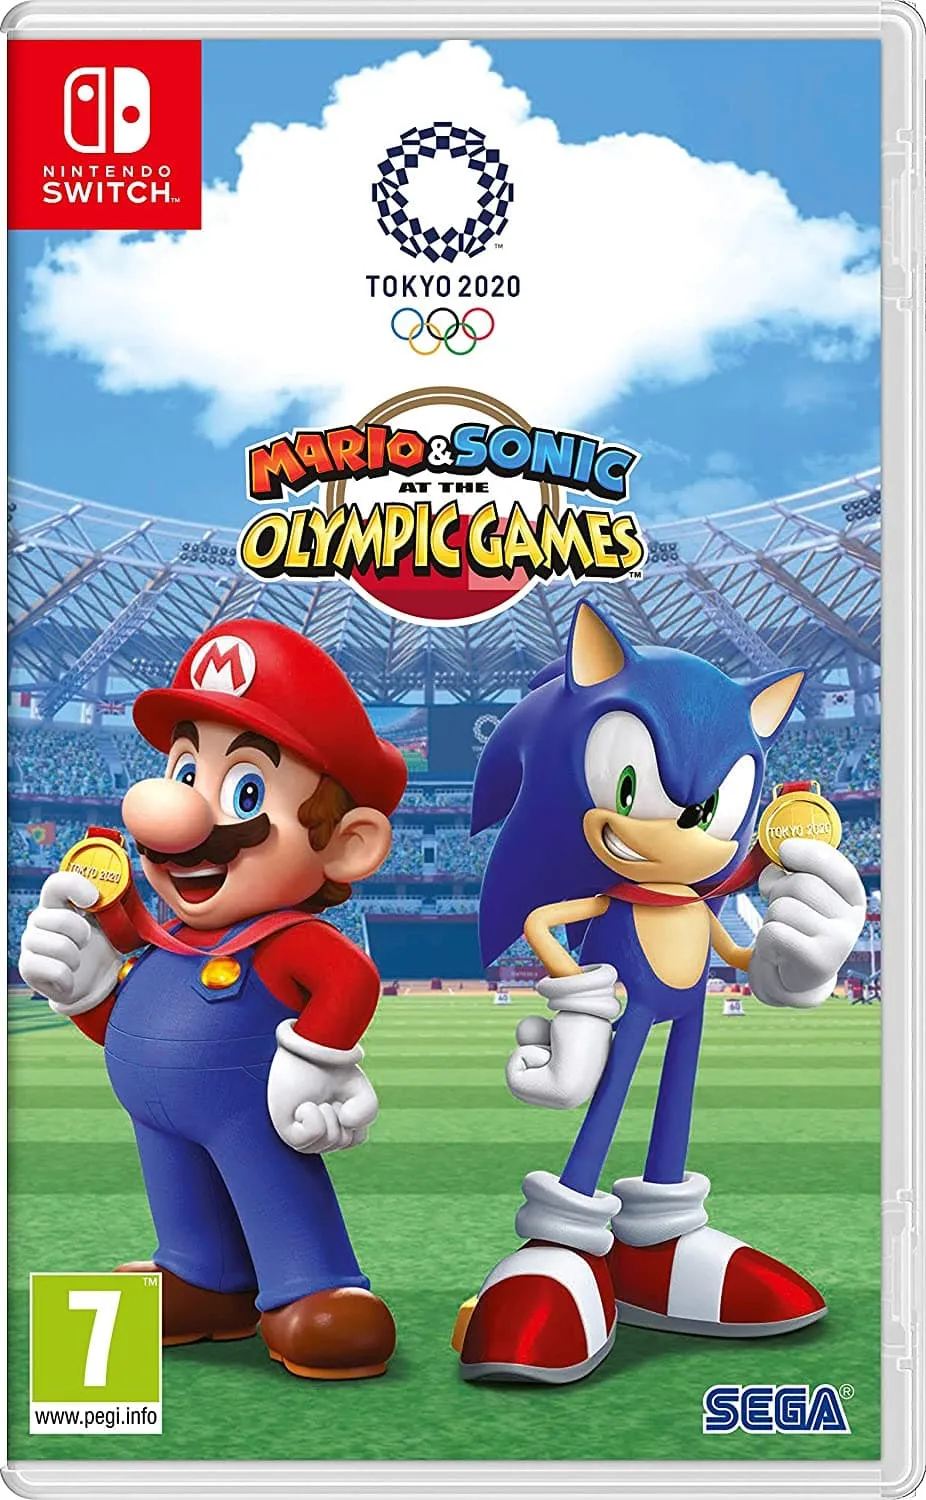 Mario & Sonic vid de olympiska spelen: Tokyo 2020 för Nintendo Switch-konstverk.